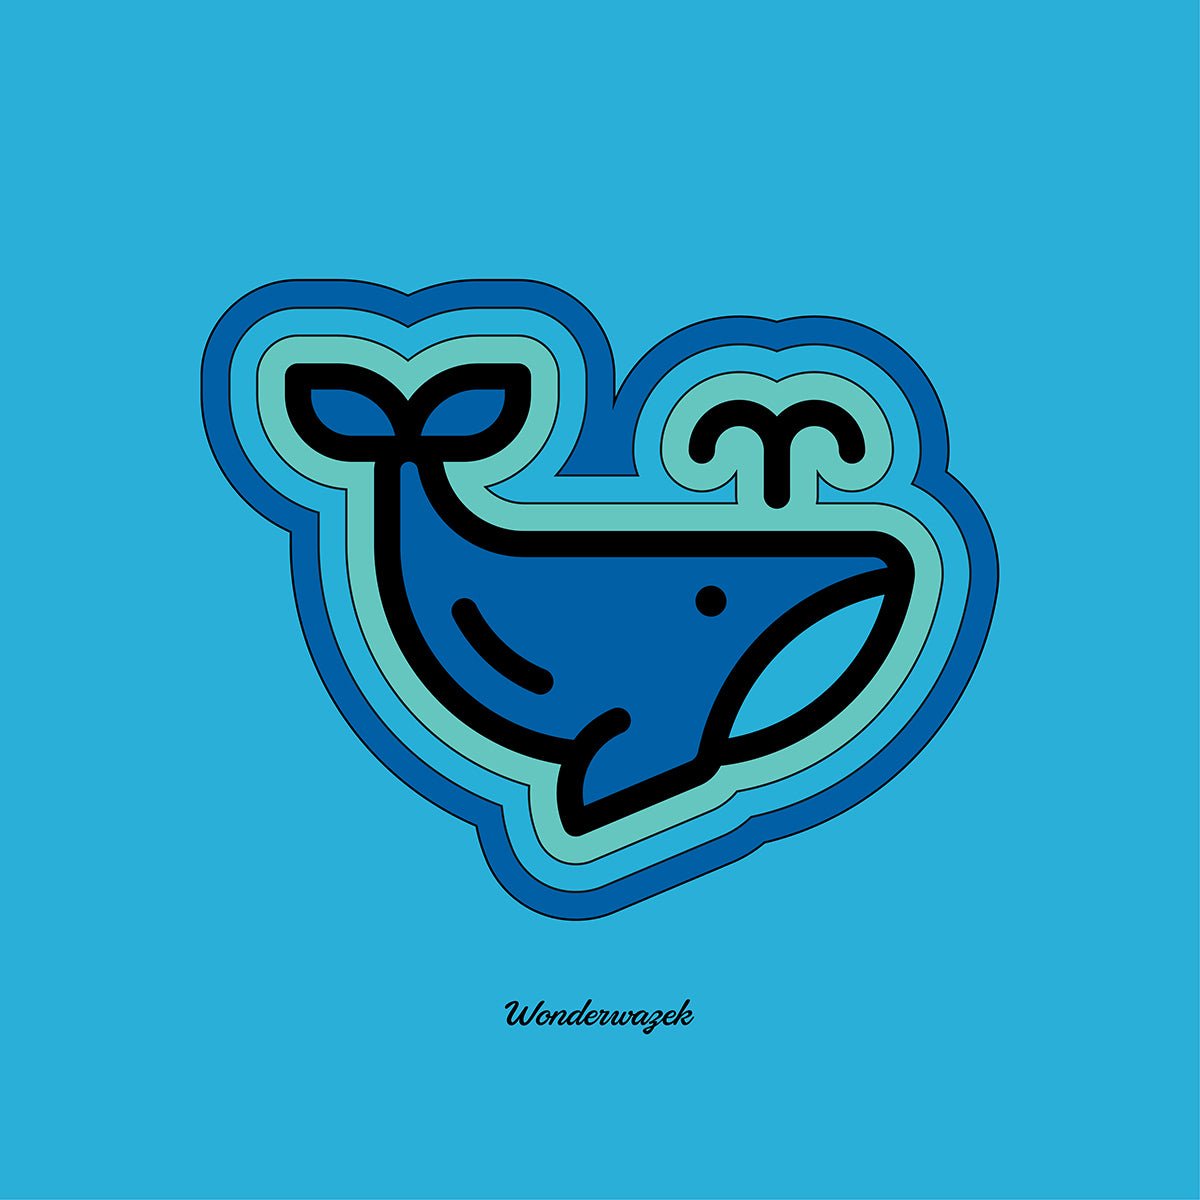 Wale | Wonderwazek